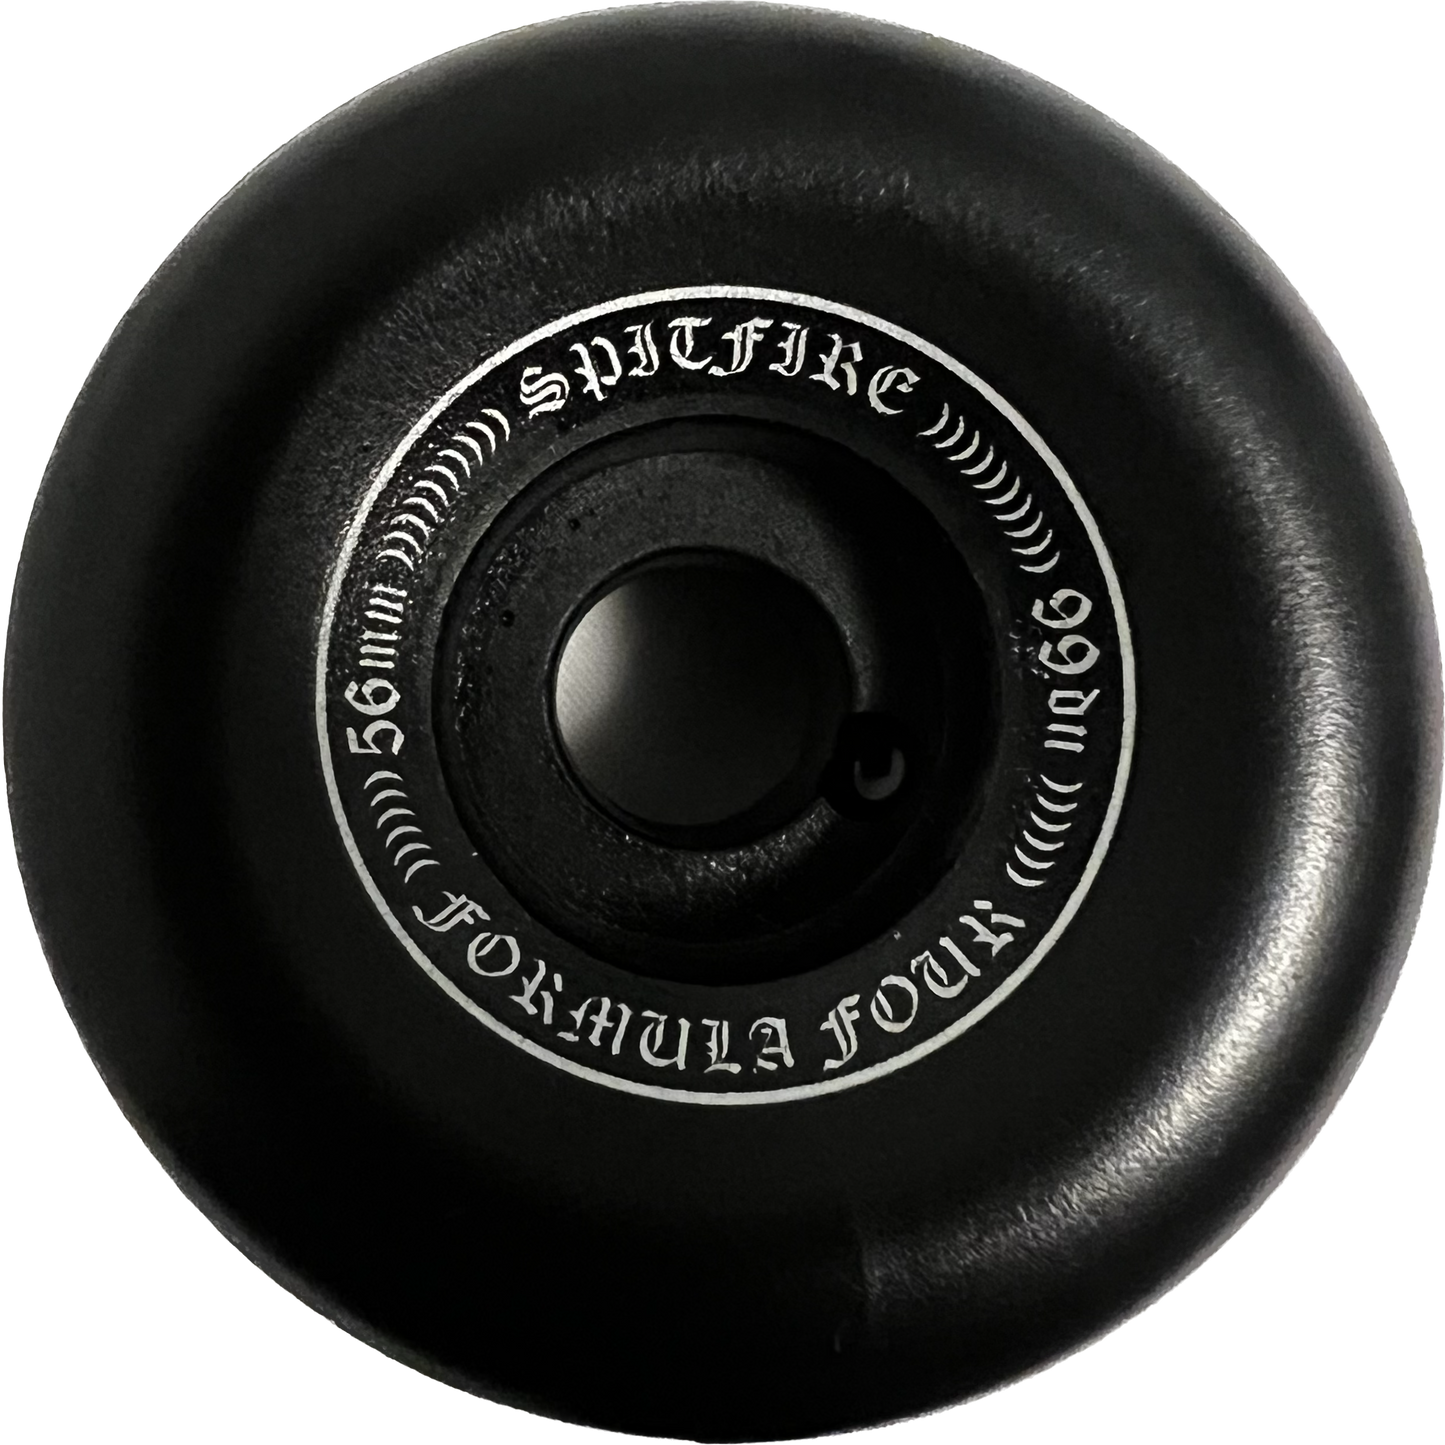 Spitfire Formula Four OG Classic 56mm 99d Set Of 4 Skateboard Wheels Black